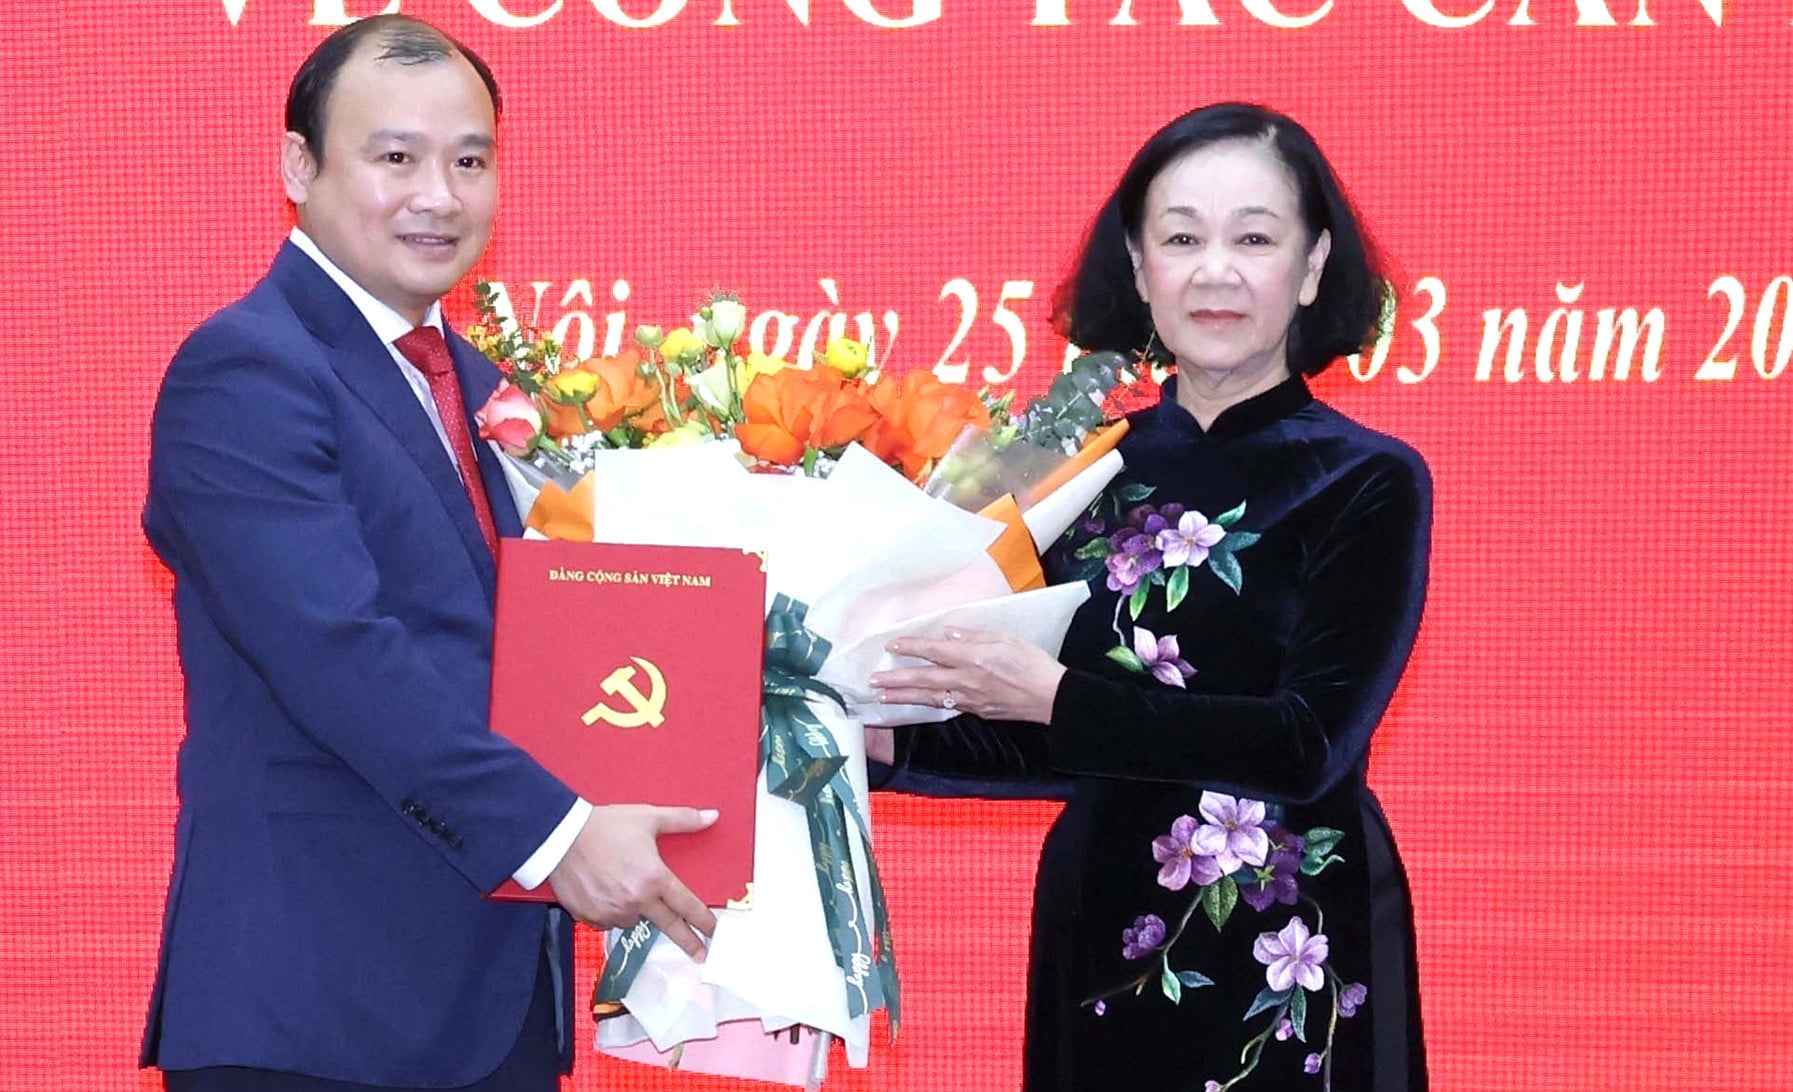 Bộ Chính trị điều động, bổ nhiệm ông Lê Hải Bình làm Tổng Biên tập Tạp chí Cộng sản- Ảnh 1.